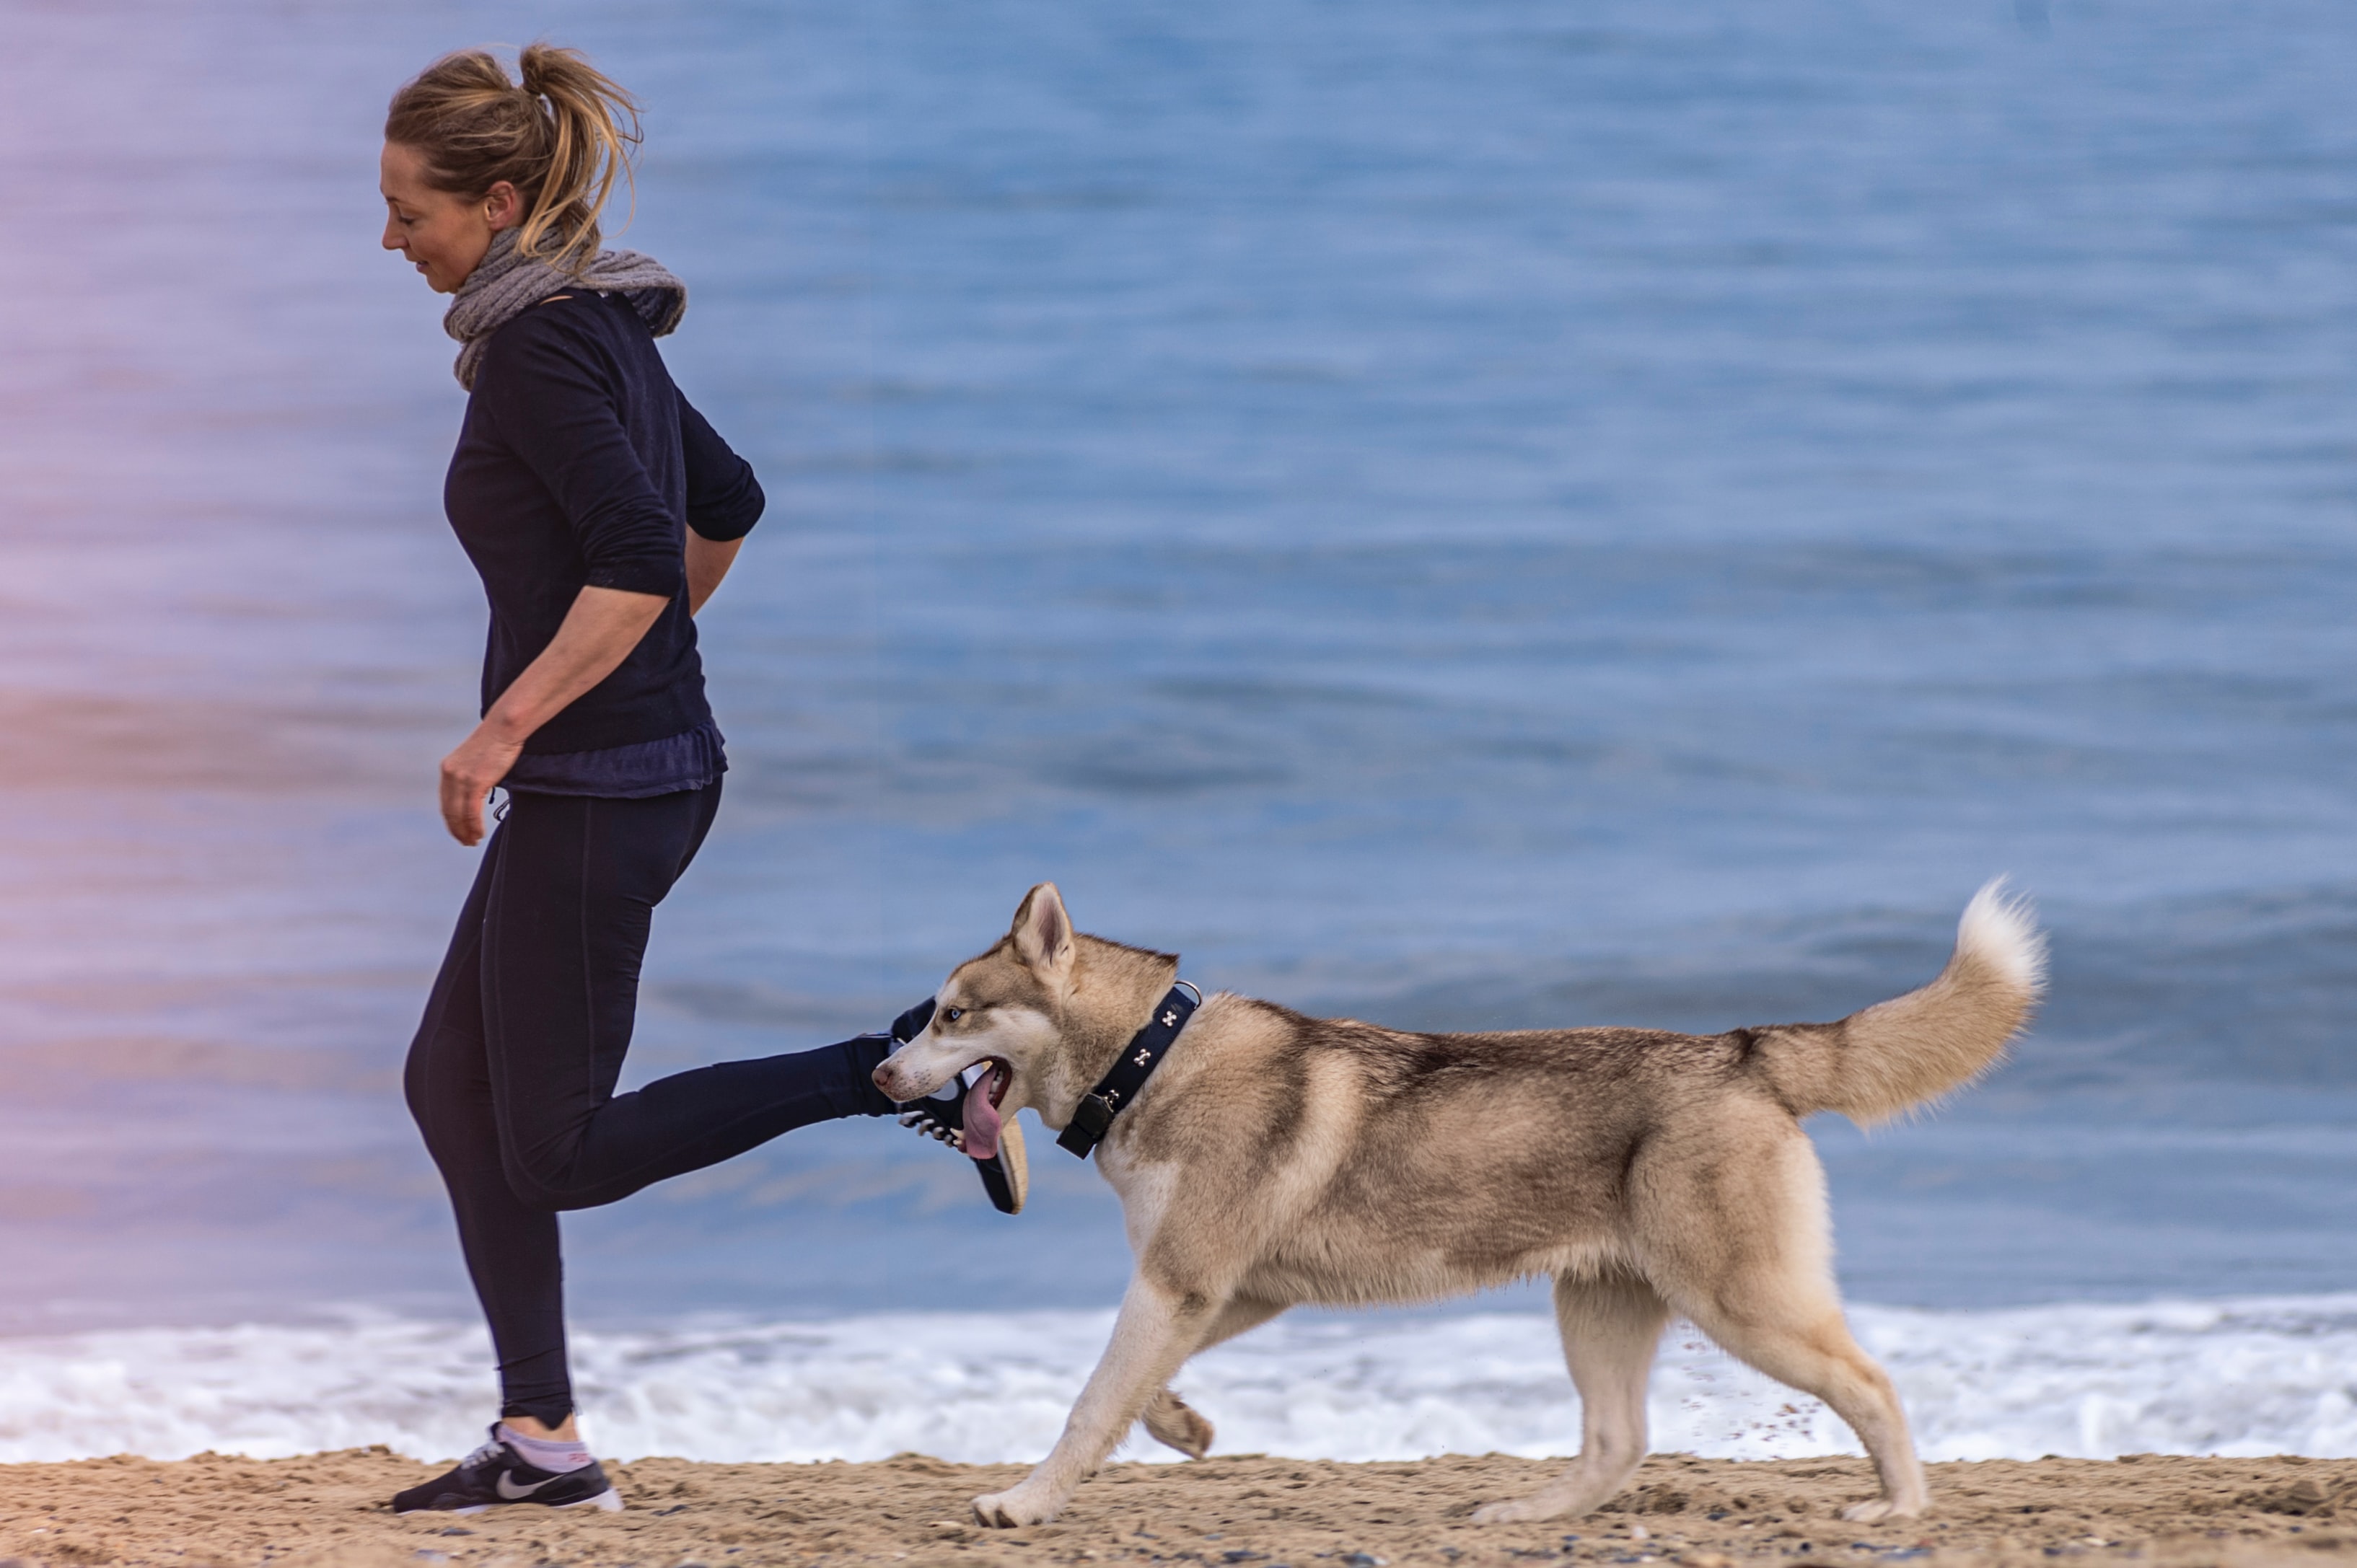 Femme qui courre sur la plage avec son chien